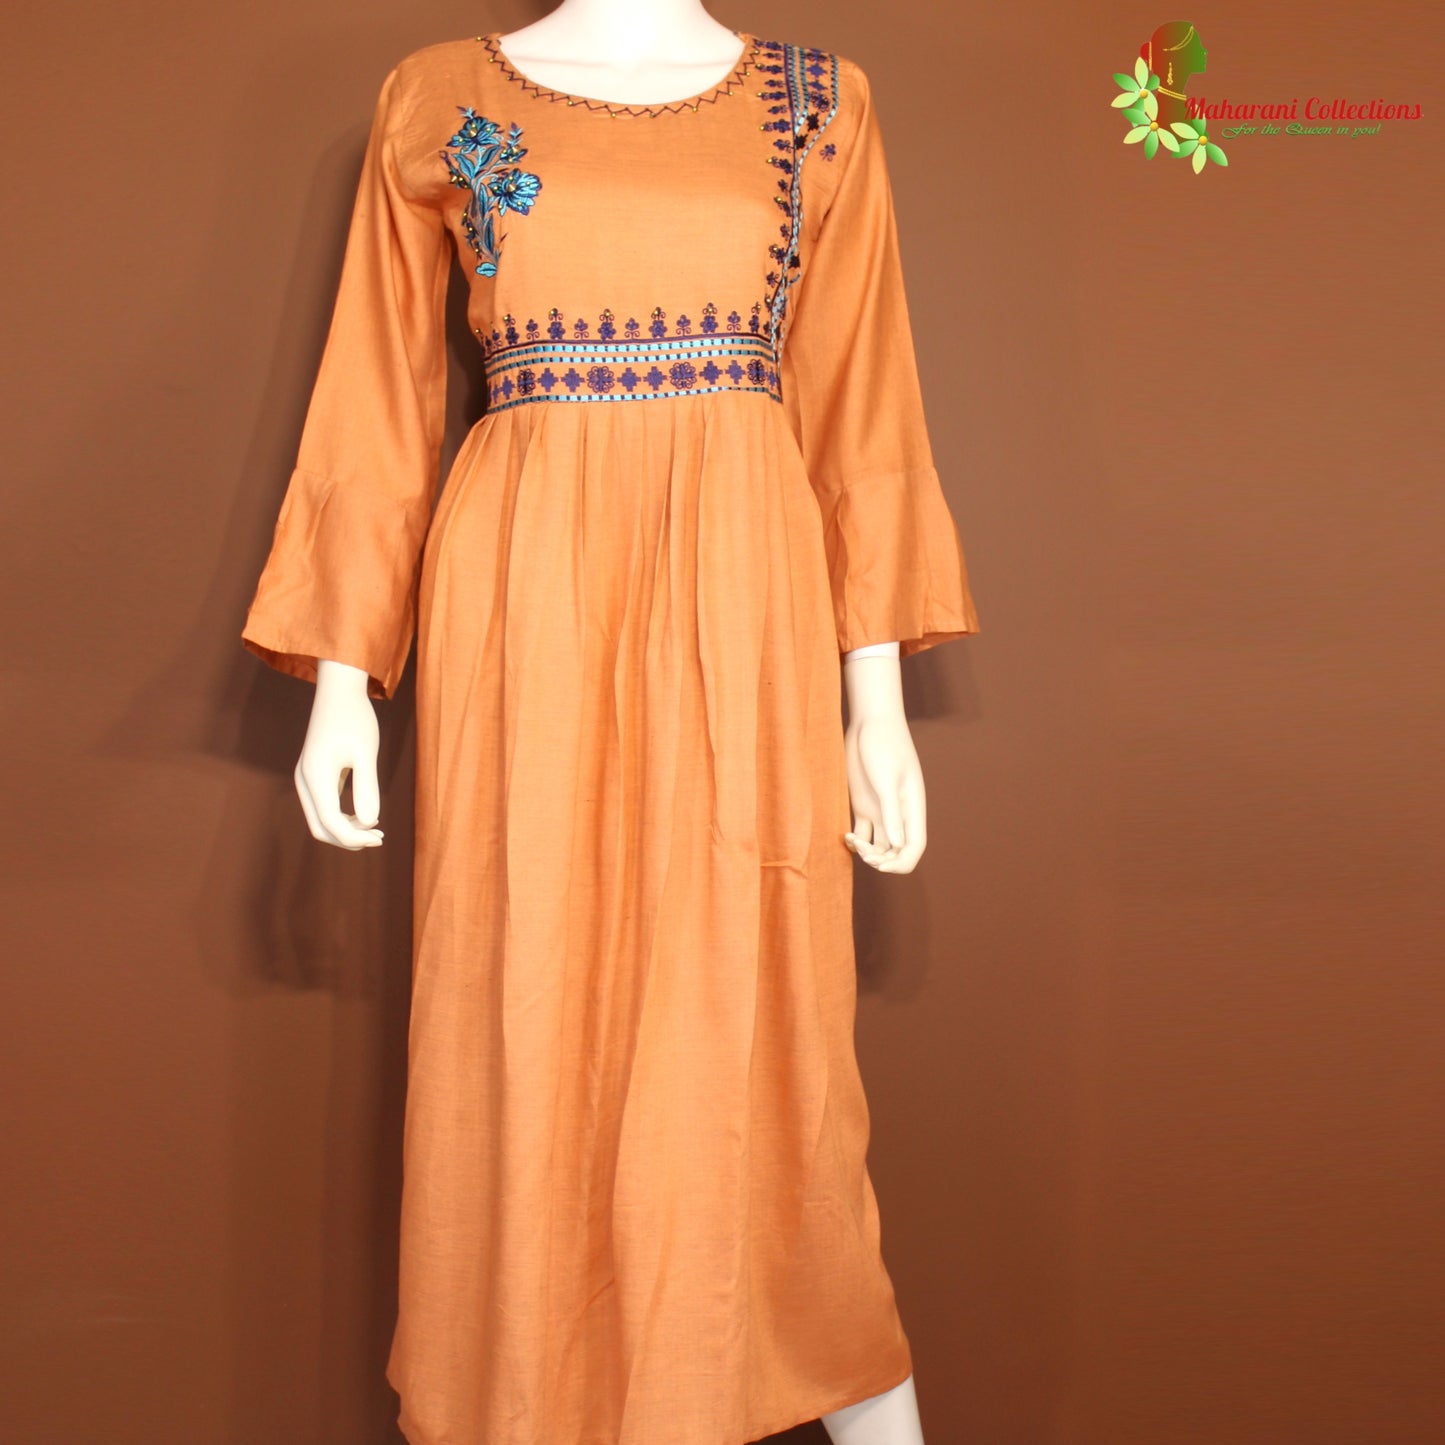 Maharani's Long Dress - Soft Cotton - Light Orange (M)